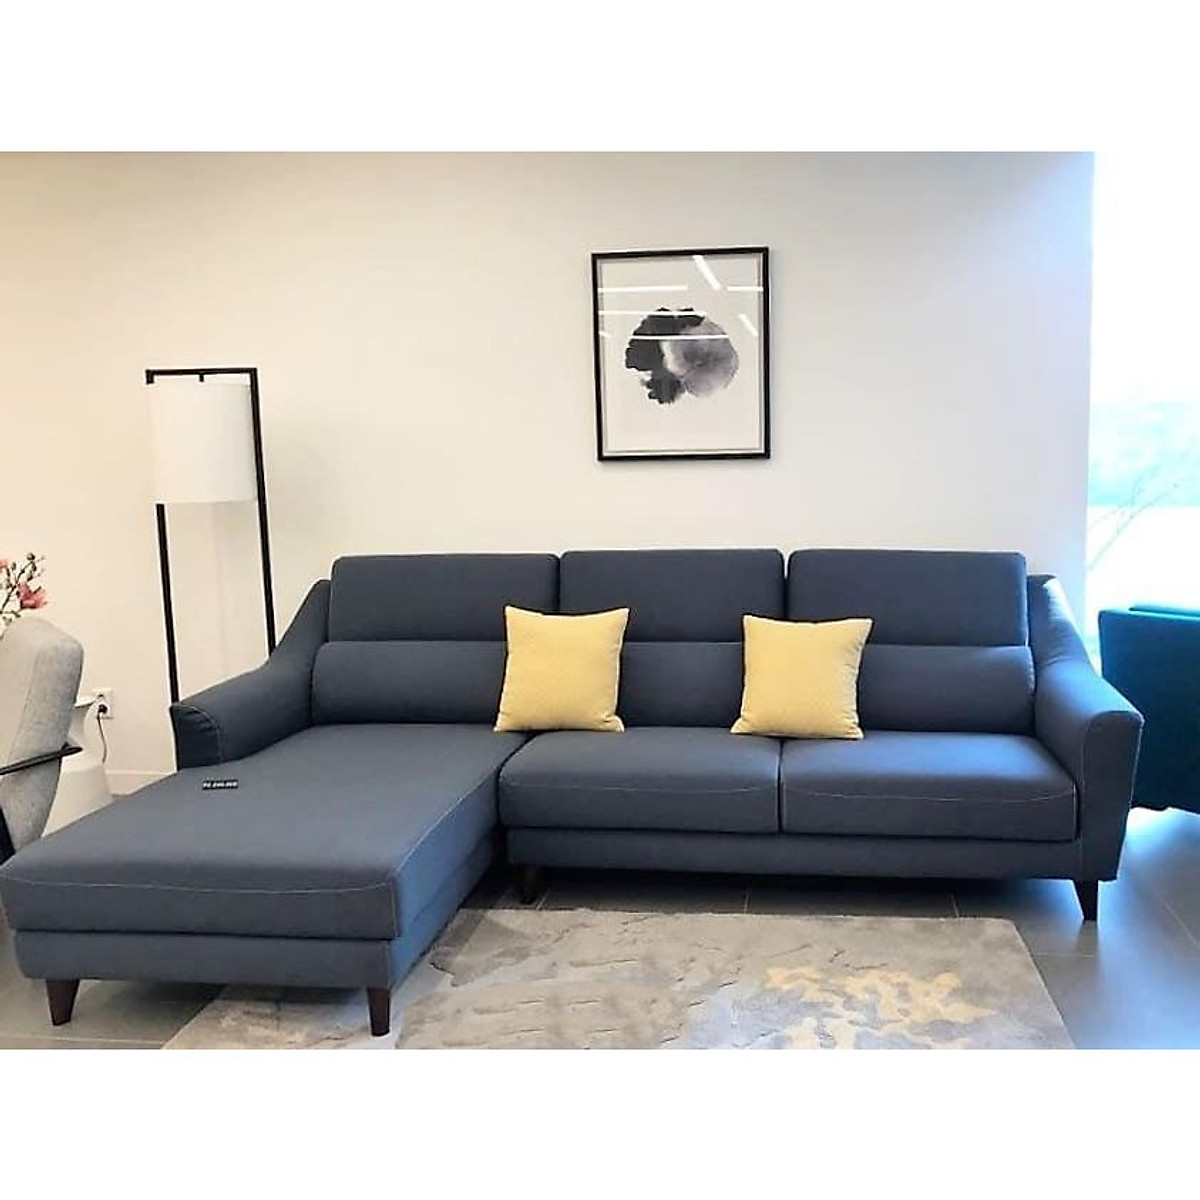 Sofa vải phòng khách, chân gỗ 2.8m, màu xanh than